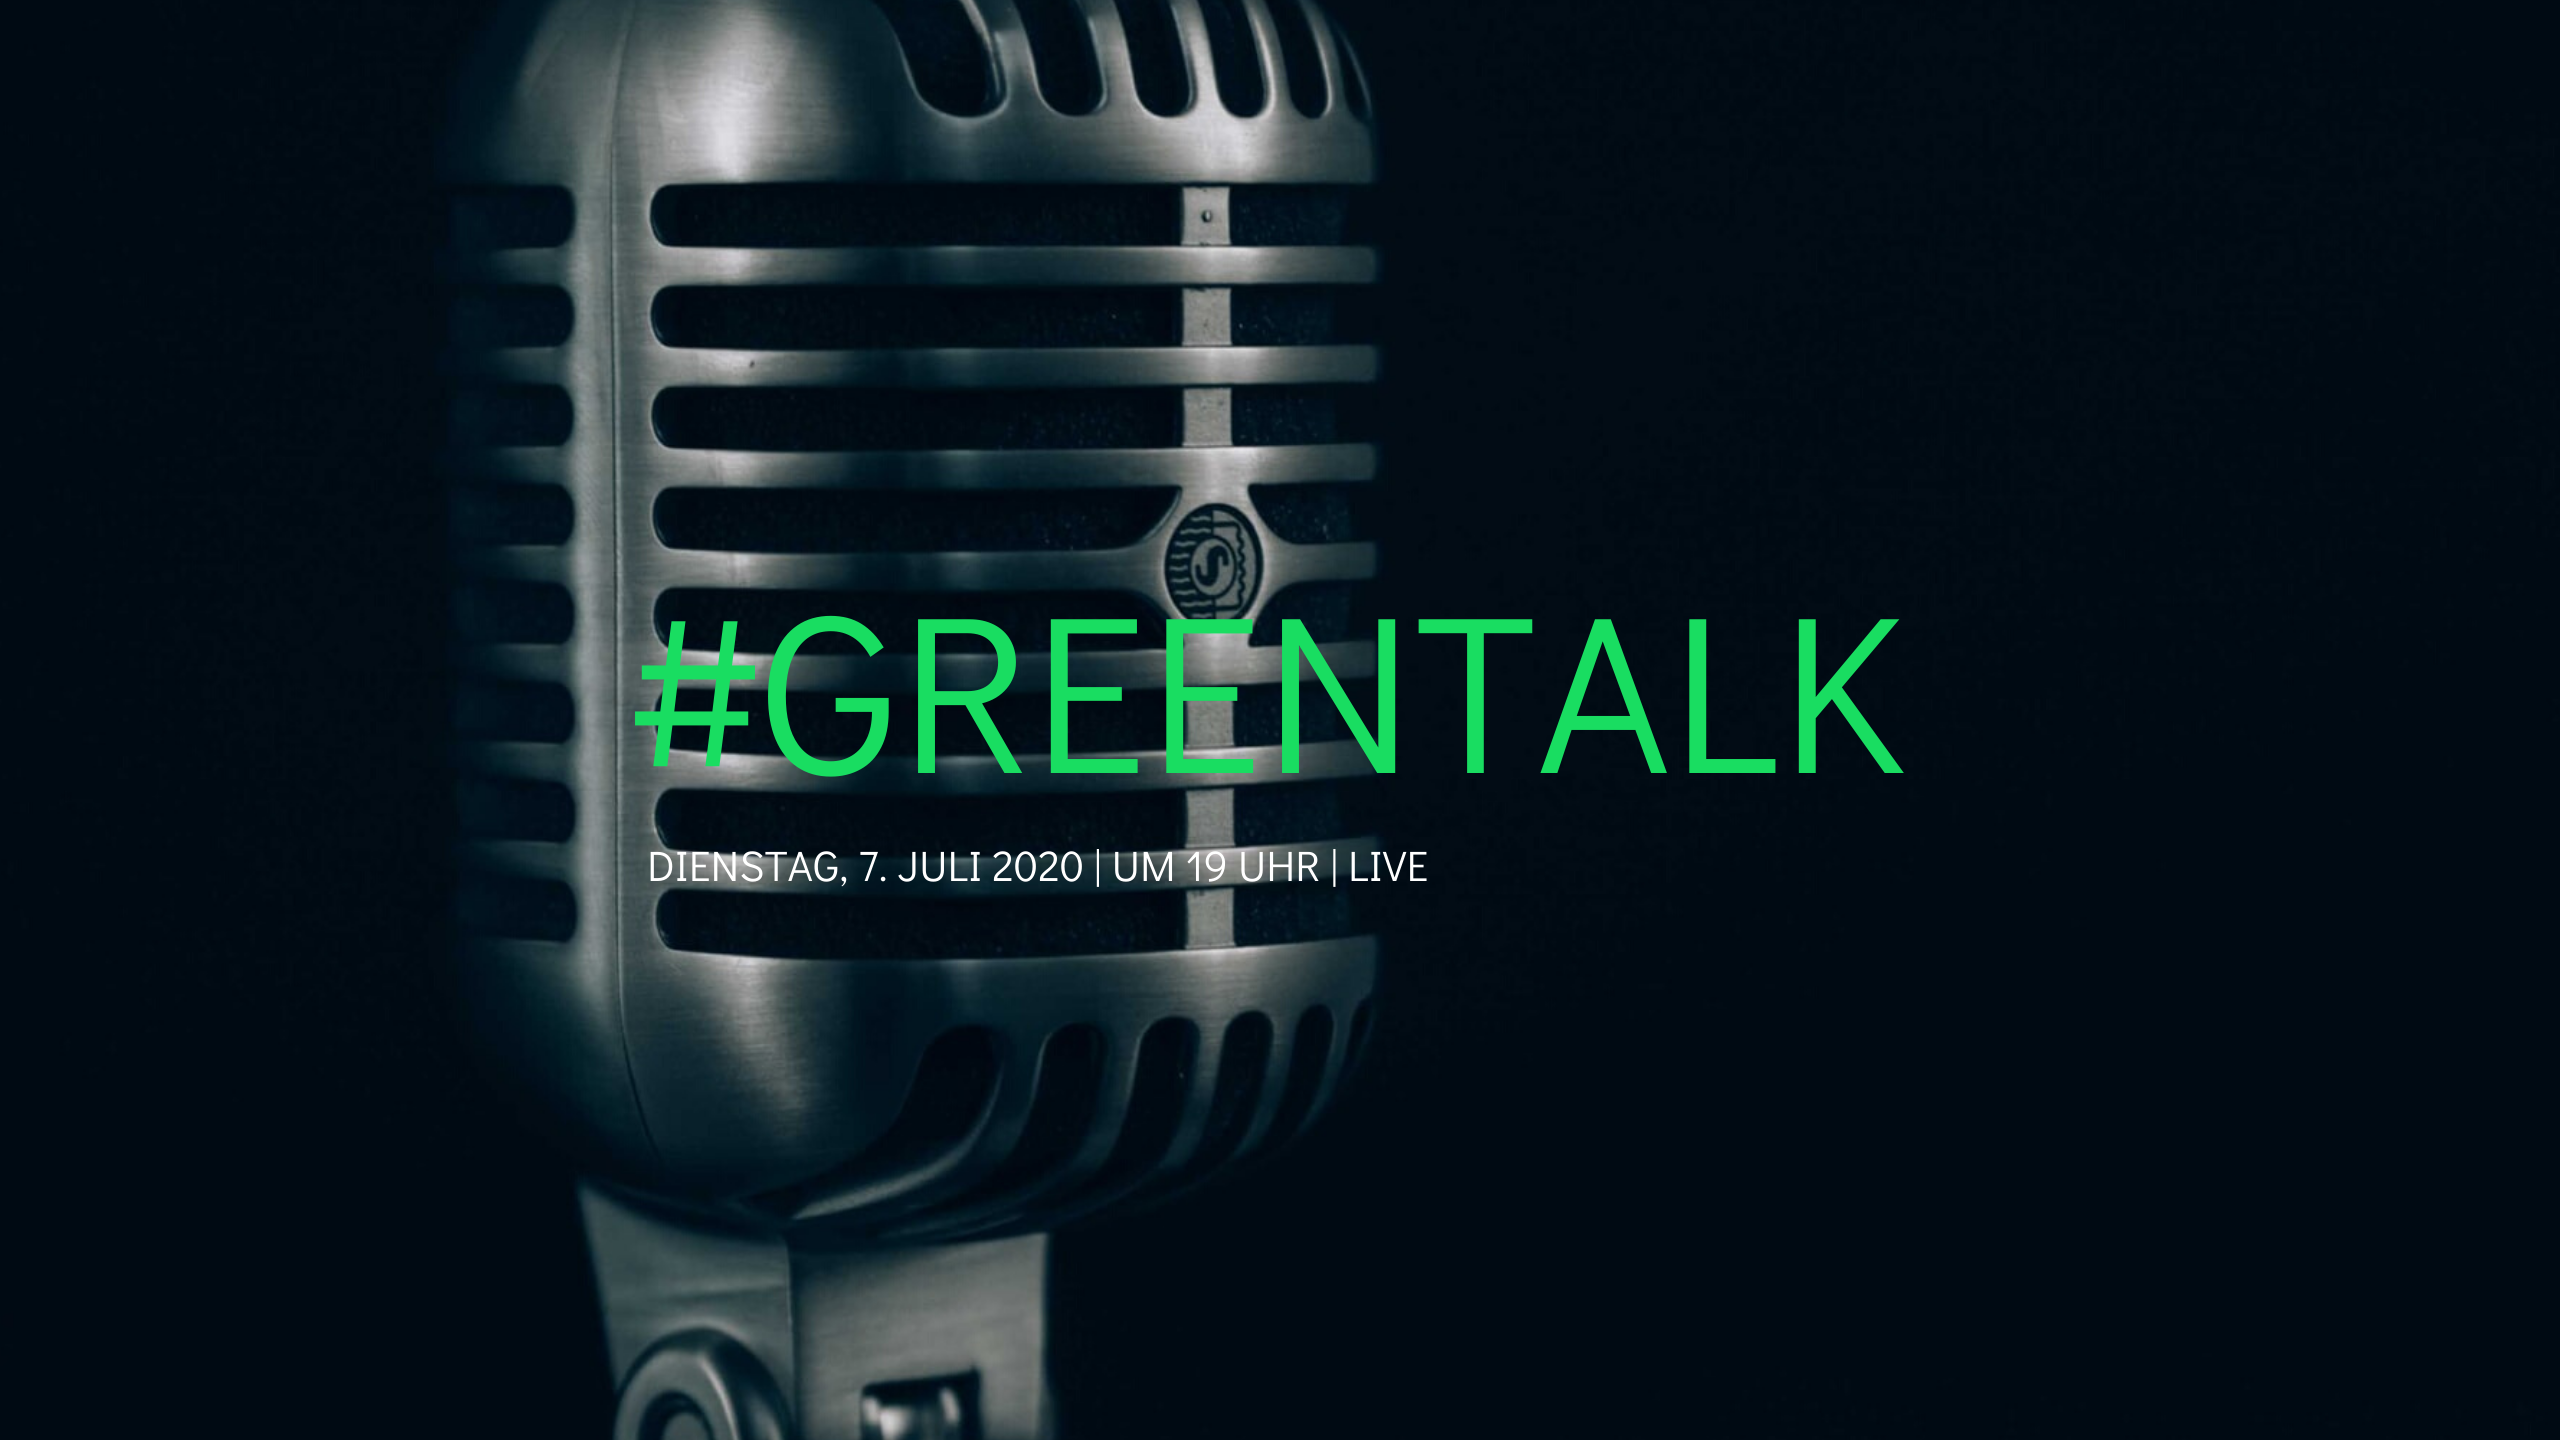 #Greentalk Live auf YouTube am 7.7.2020 um 19 Uhr